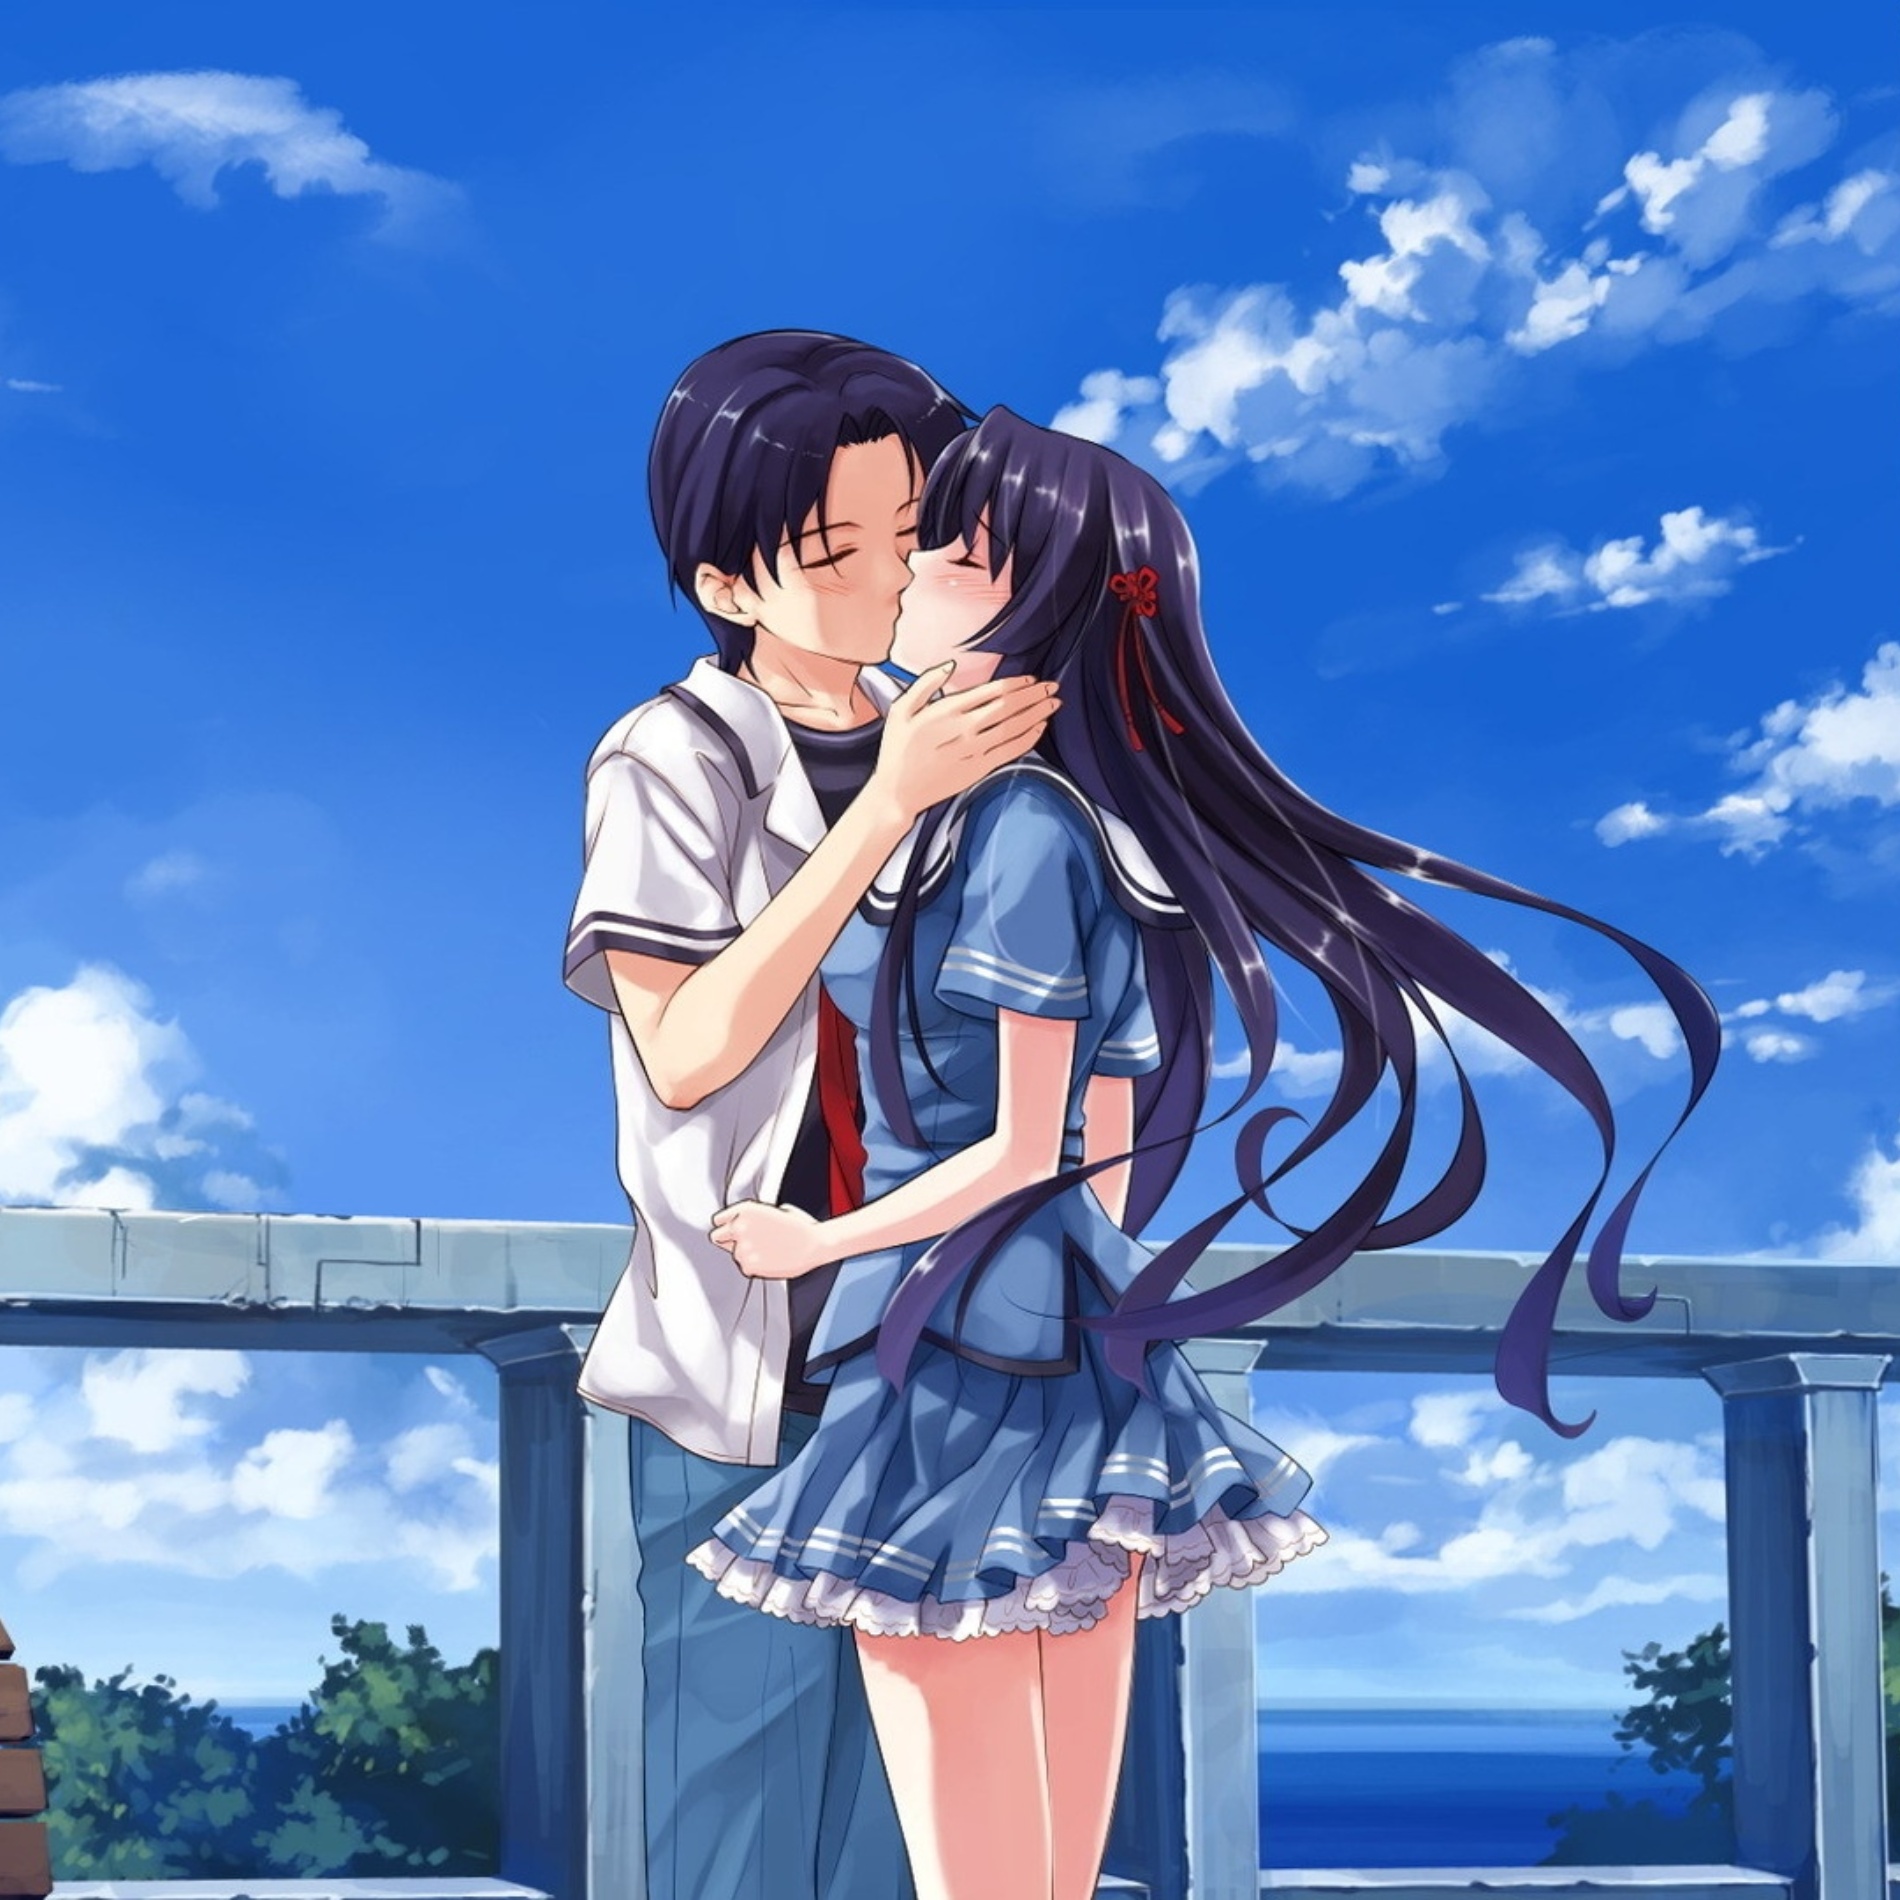 Anime Boy and Girl kiss icon